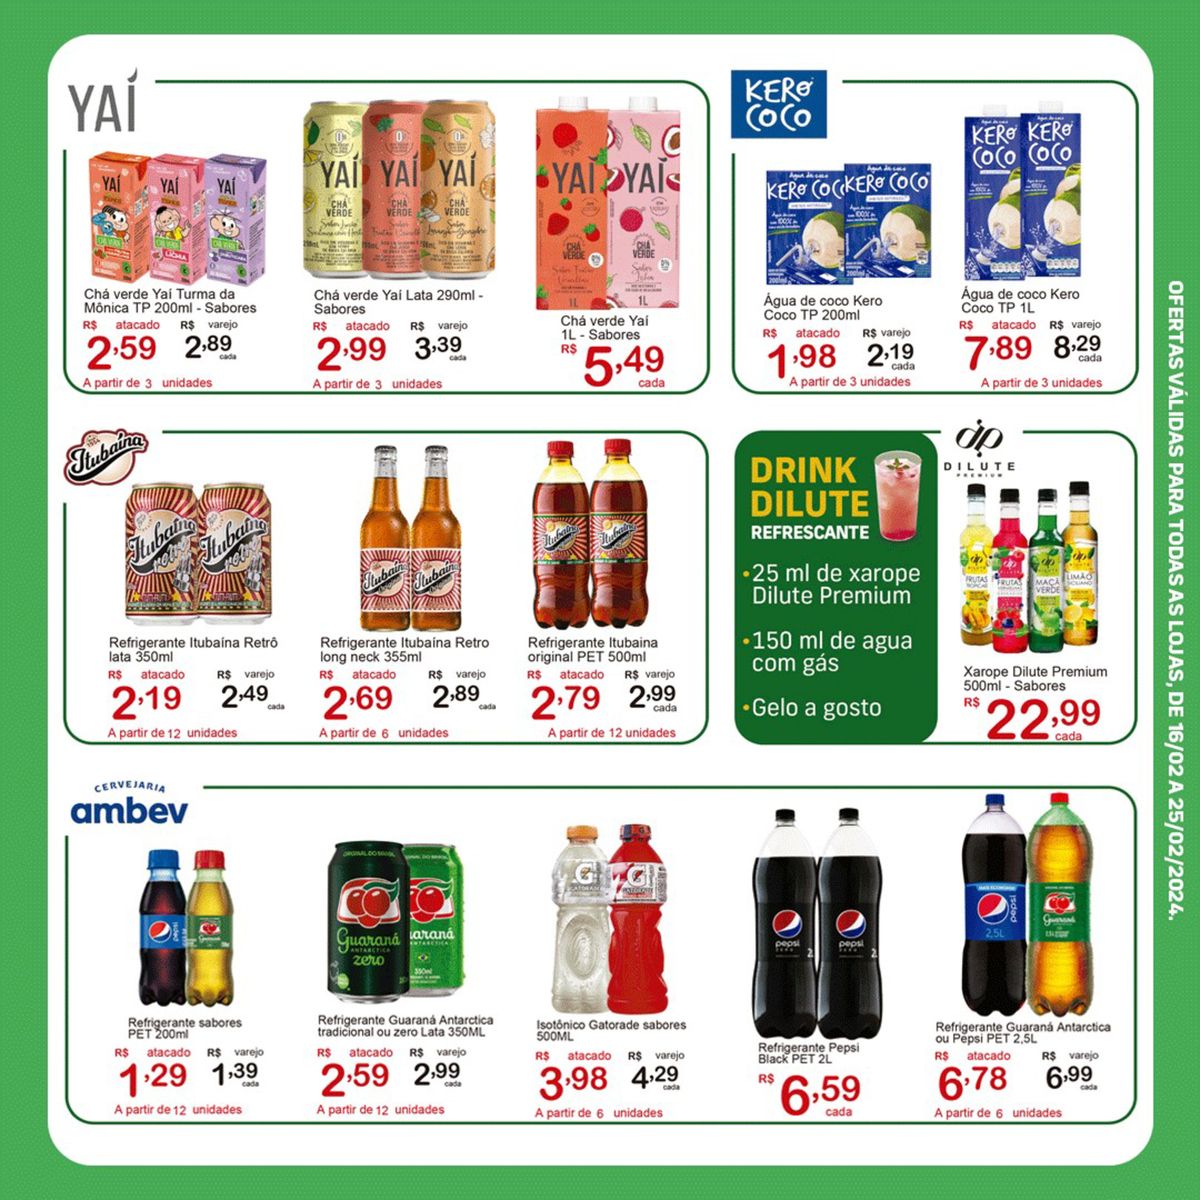 Chá verde Yaí Turma da Mônica, Refrigerante Itubaína e mais: promoções de supermercado